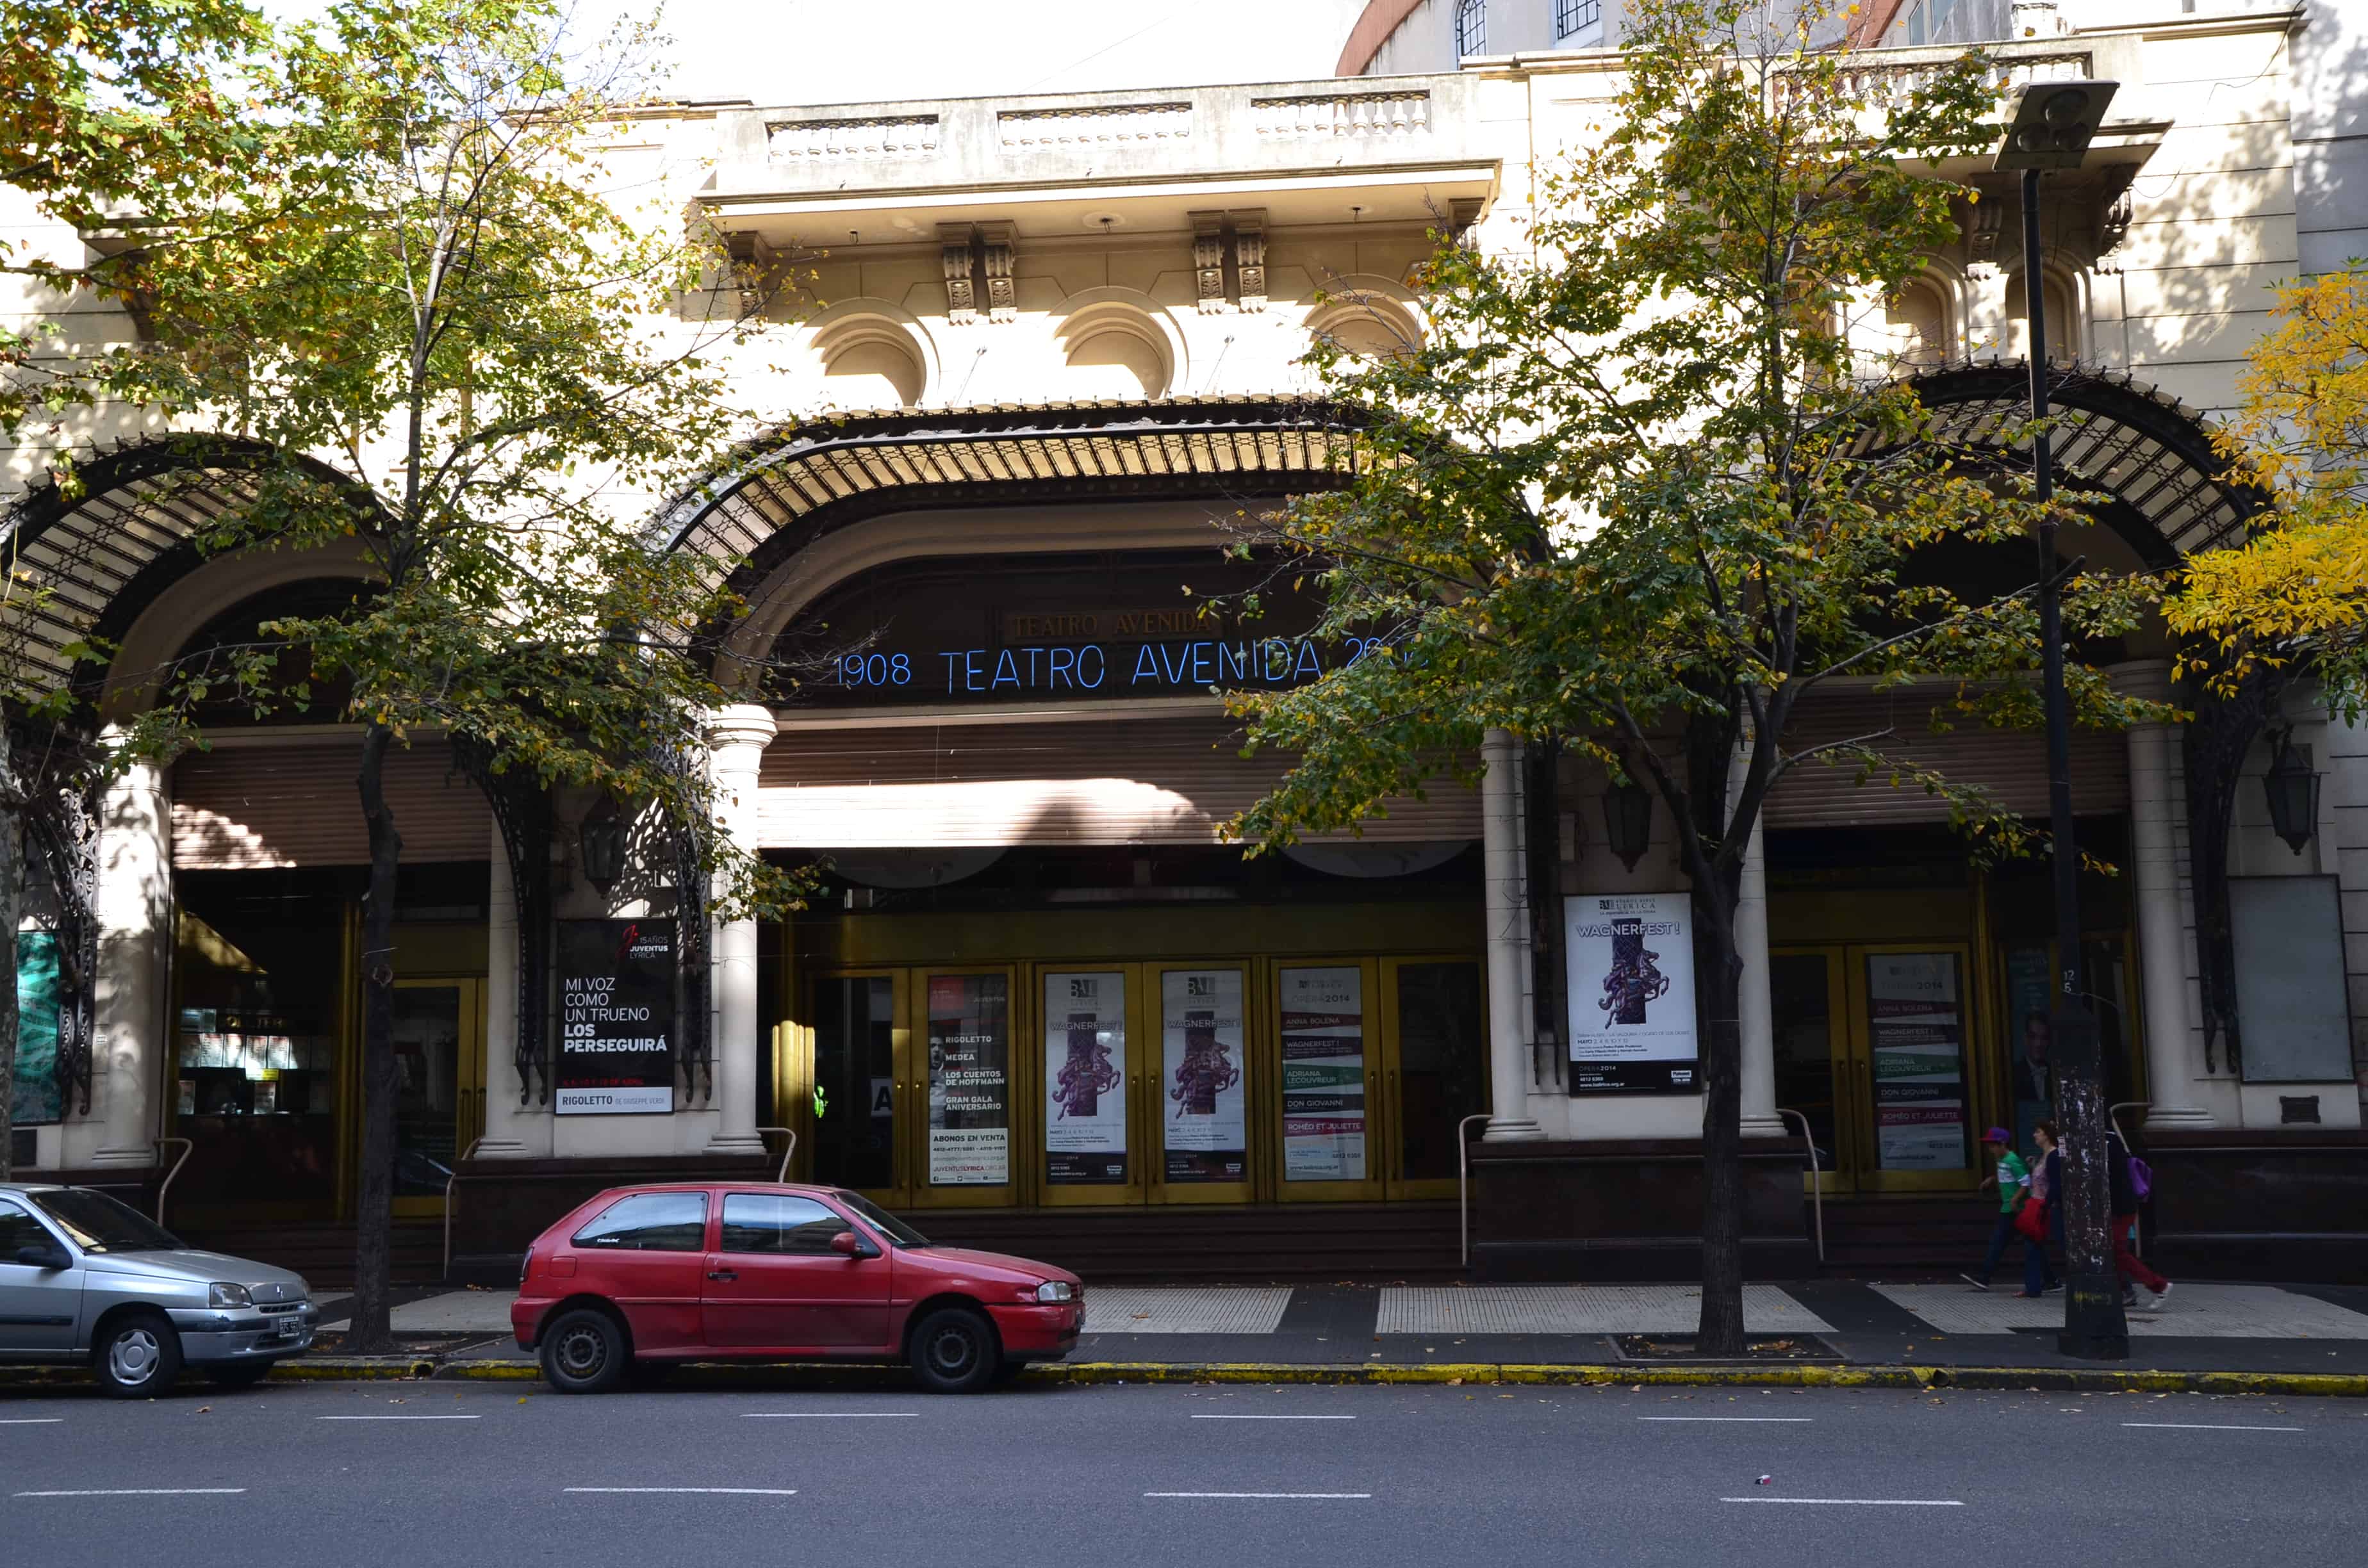 Avenida Theatre in Buenos Aires, Argentina